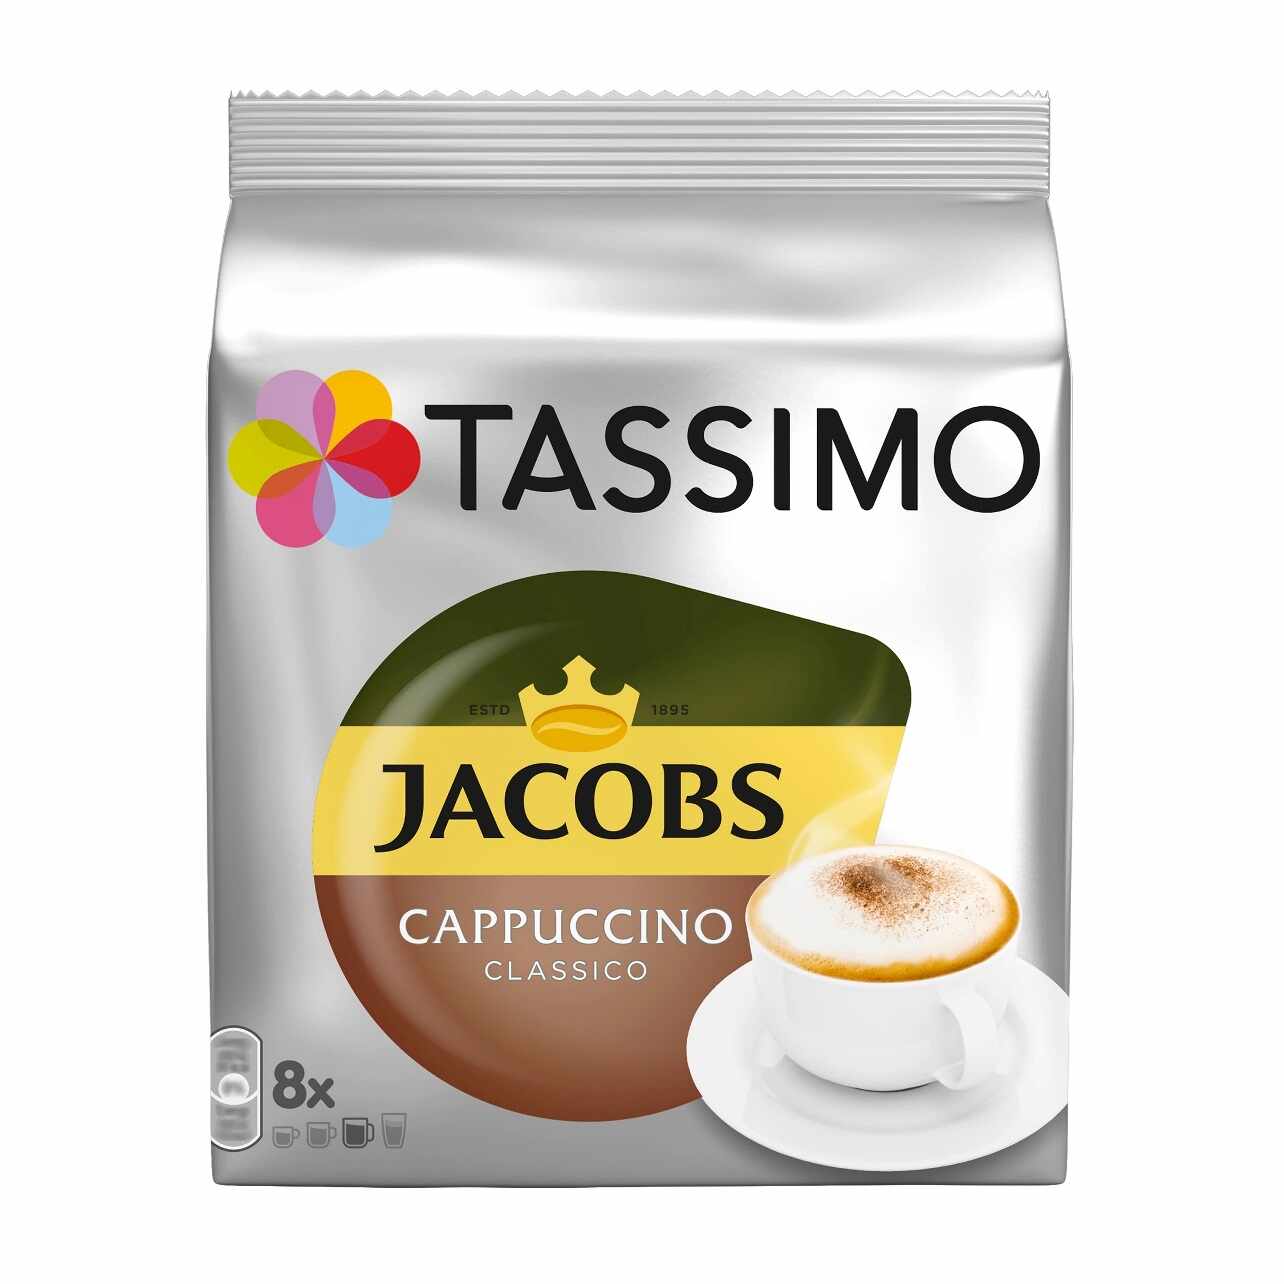 Capsule cafea Jacobs Tassimo Cappuccino 8 bauturi